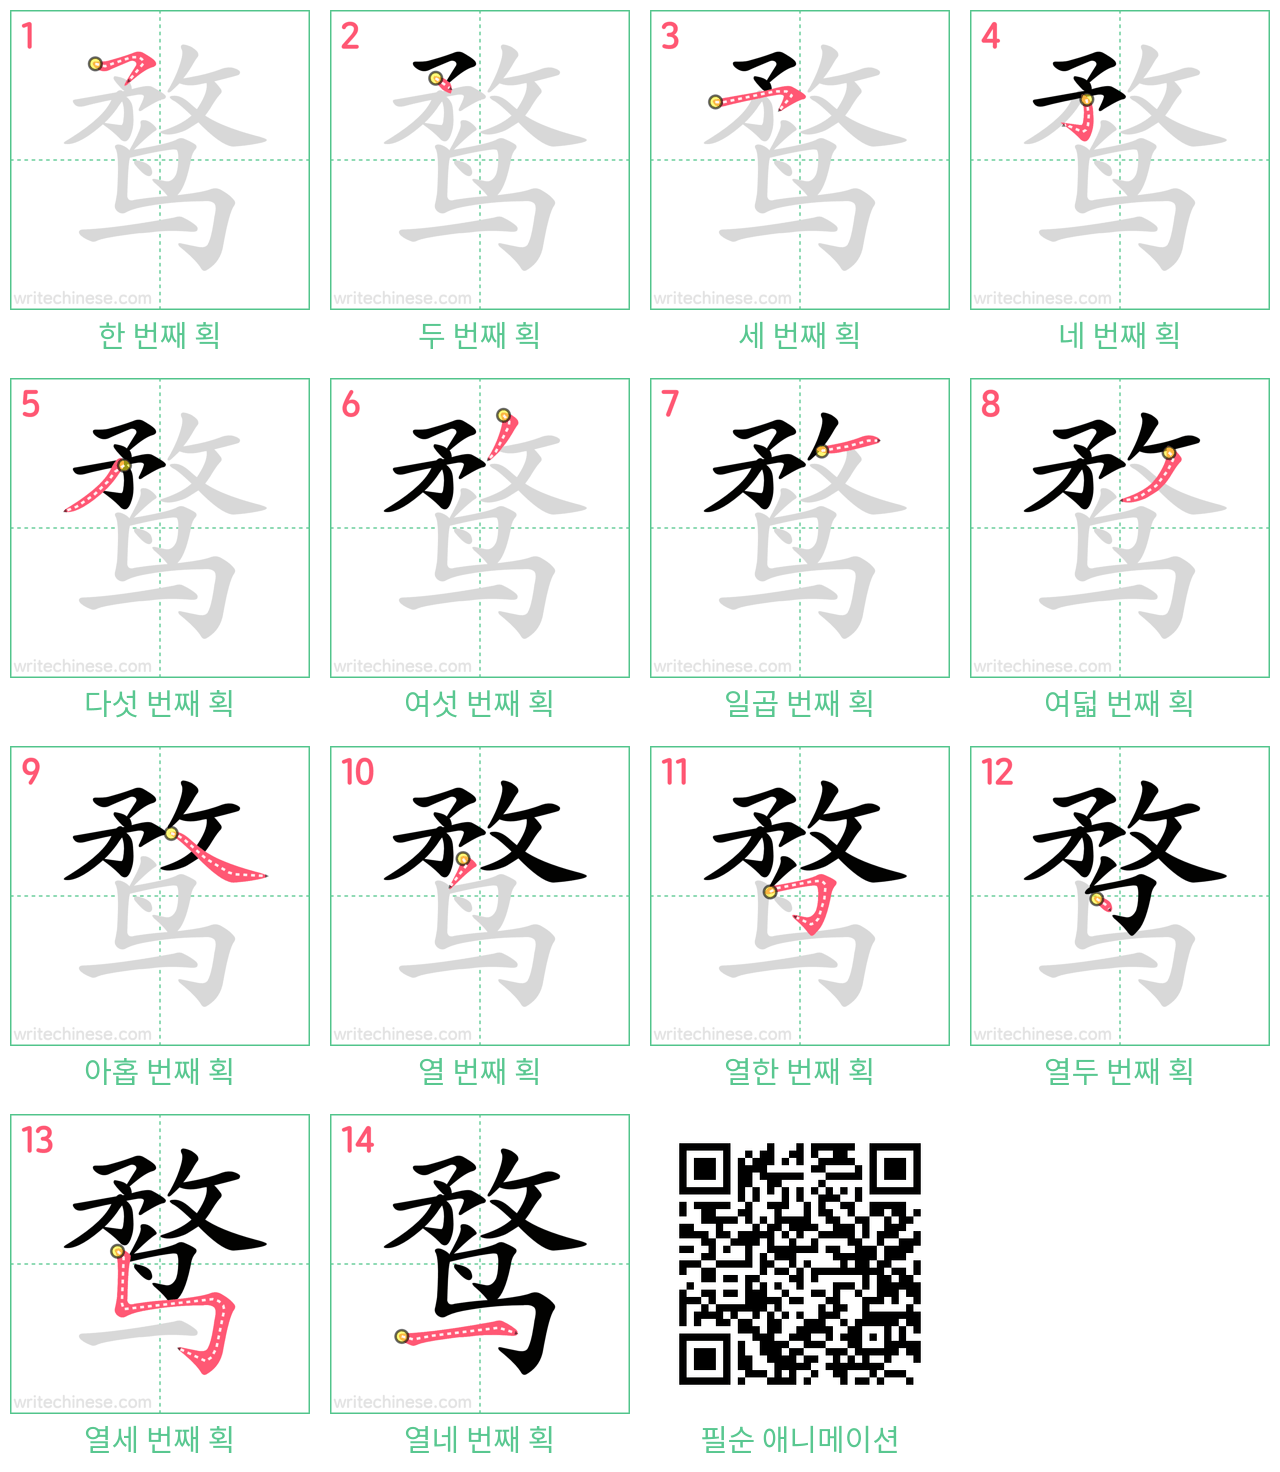 鹜 step-by-step stroke order diagrams